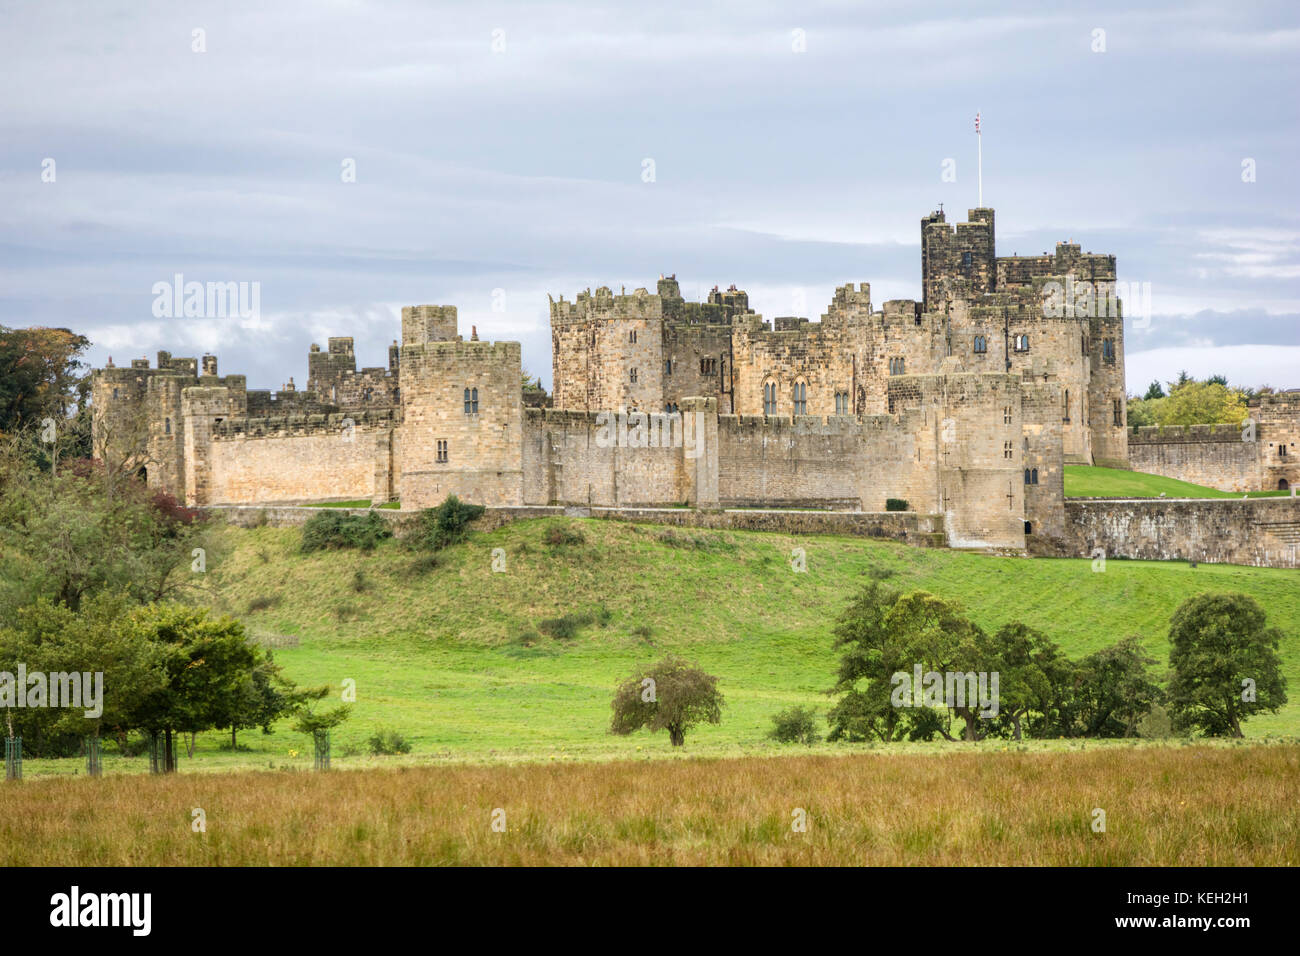 Alnwick Castle, Alnwick, Northumberland, England, UK Stock Photo